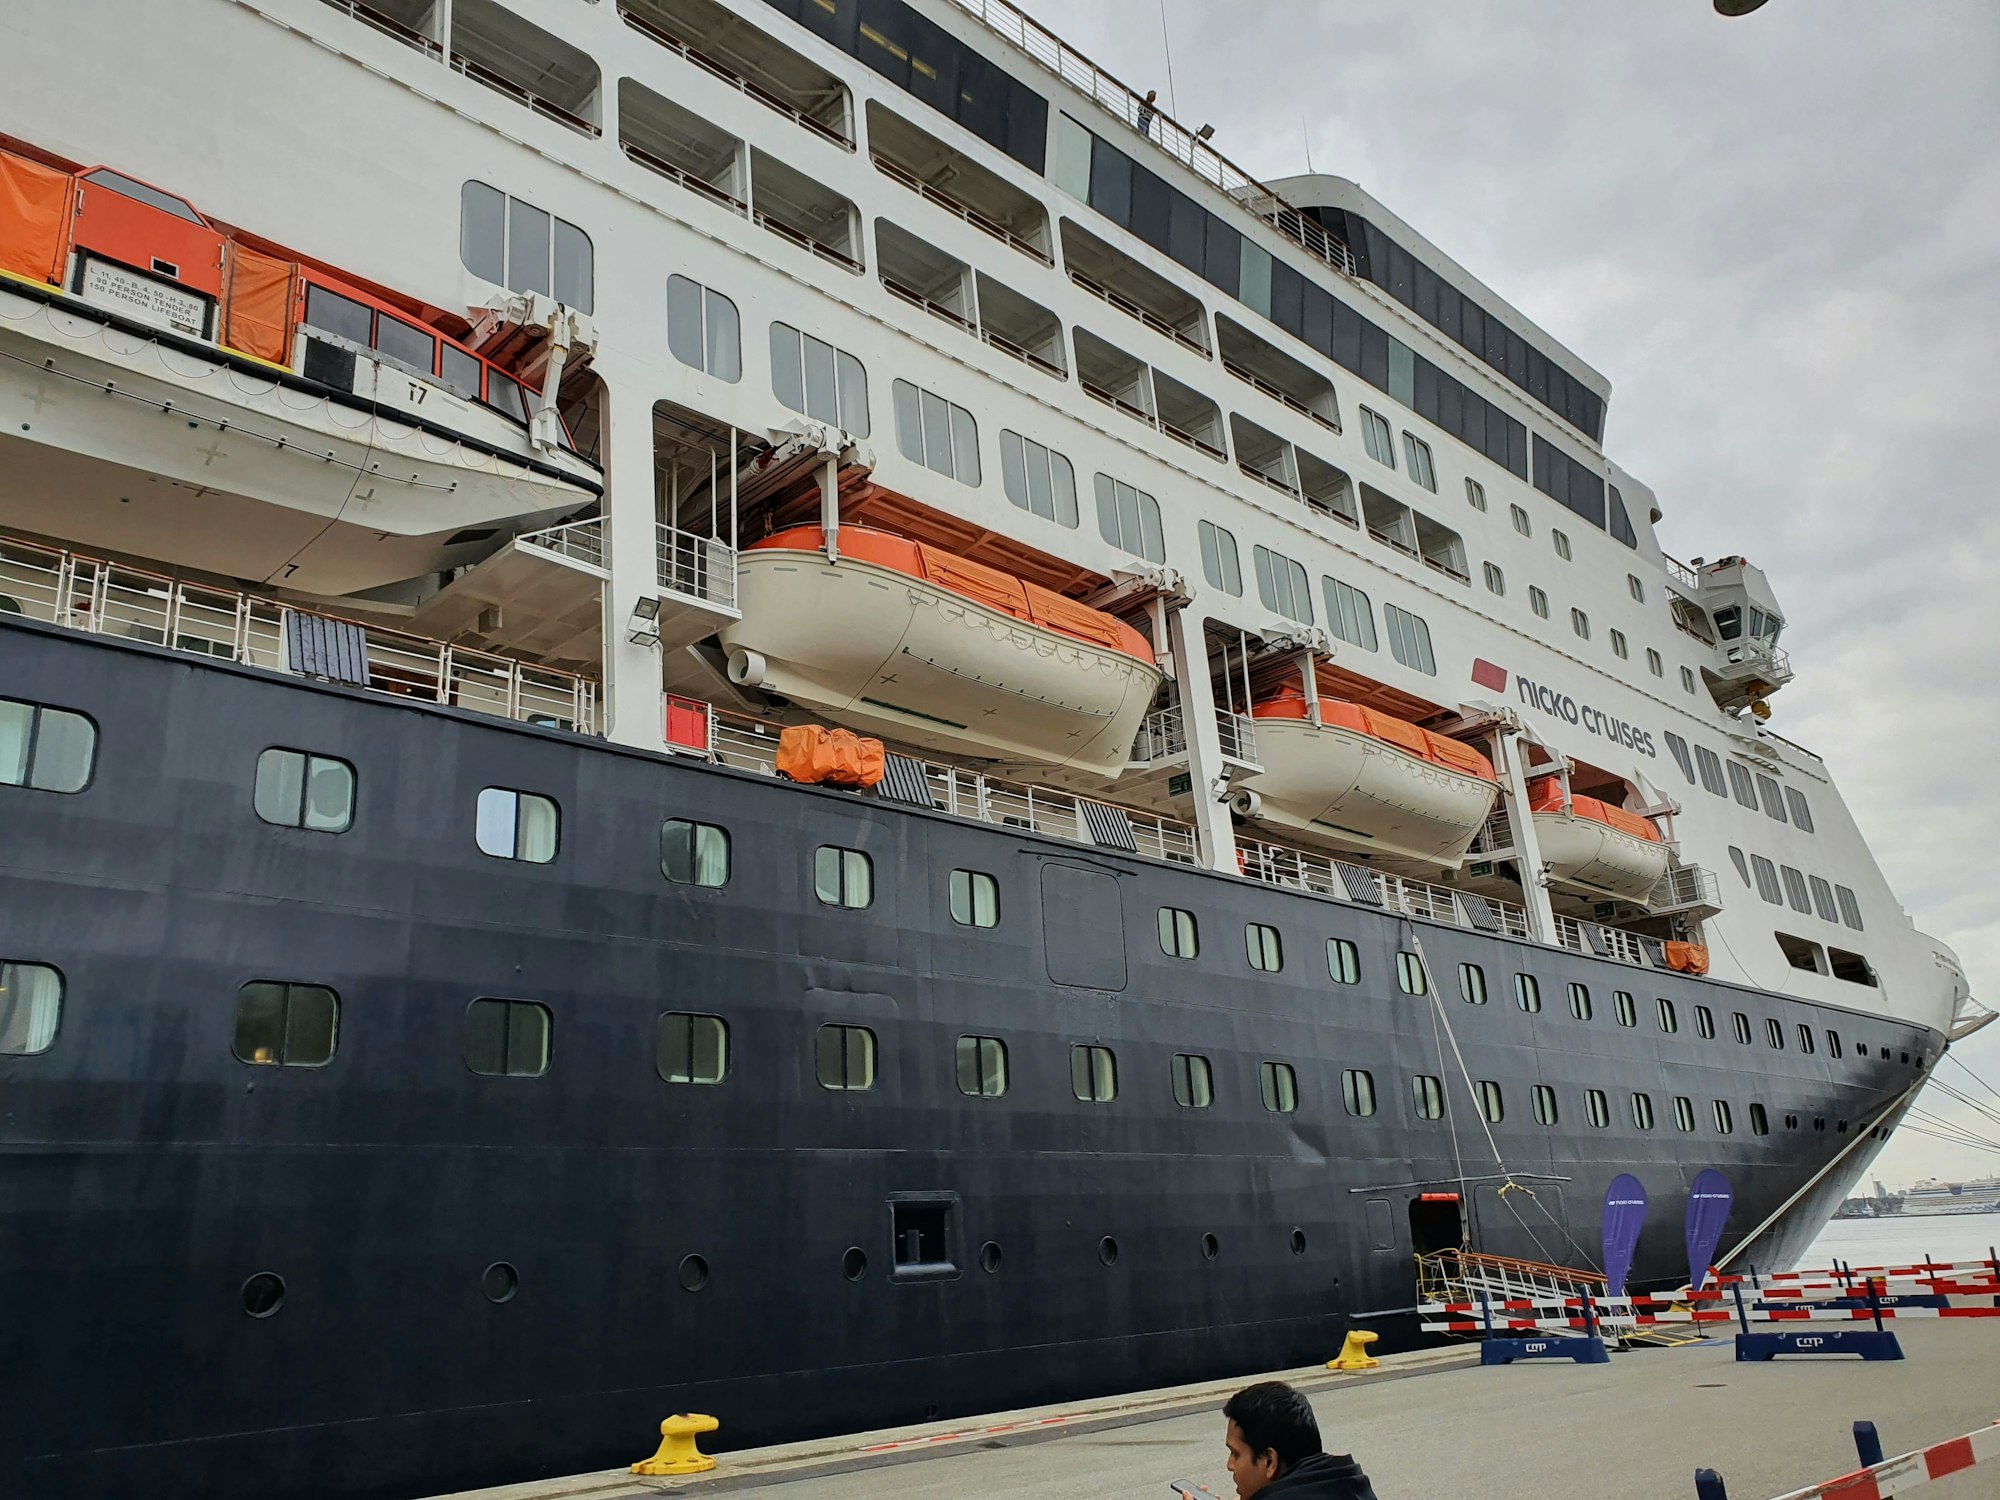 Hier zu sehen: Das Kreuzfahrtschiff „Vasco da Gama“ von Nicko Reisen, welches am 13. September 2013 von Schlepperbooten in den Kopenhagener Hafen manövriert wurde.